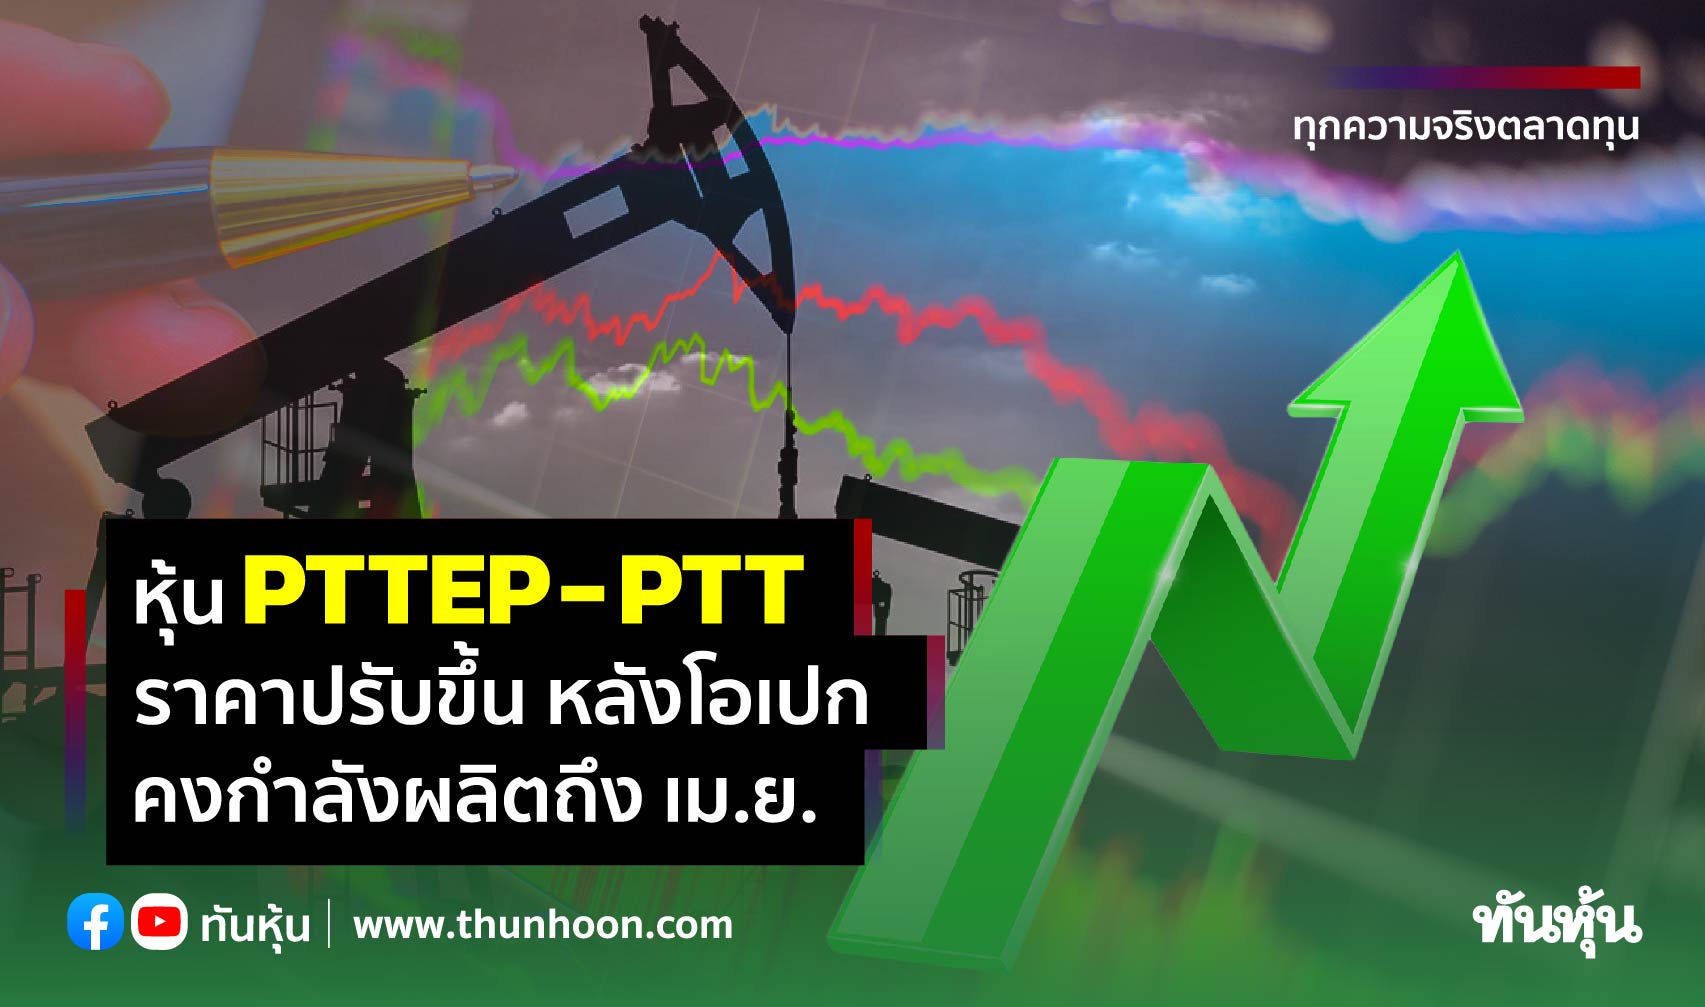 หุ้น PTTEP-PTT ราคาปรับขึ้น หลังโอเปกคงกำลังผลิตถึง เม.ย.